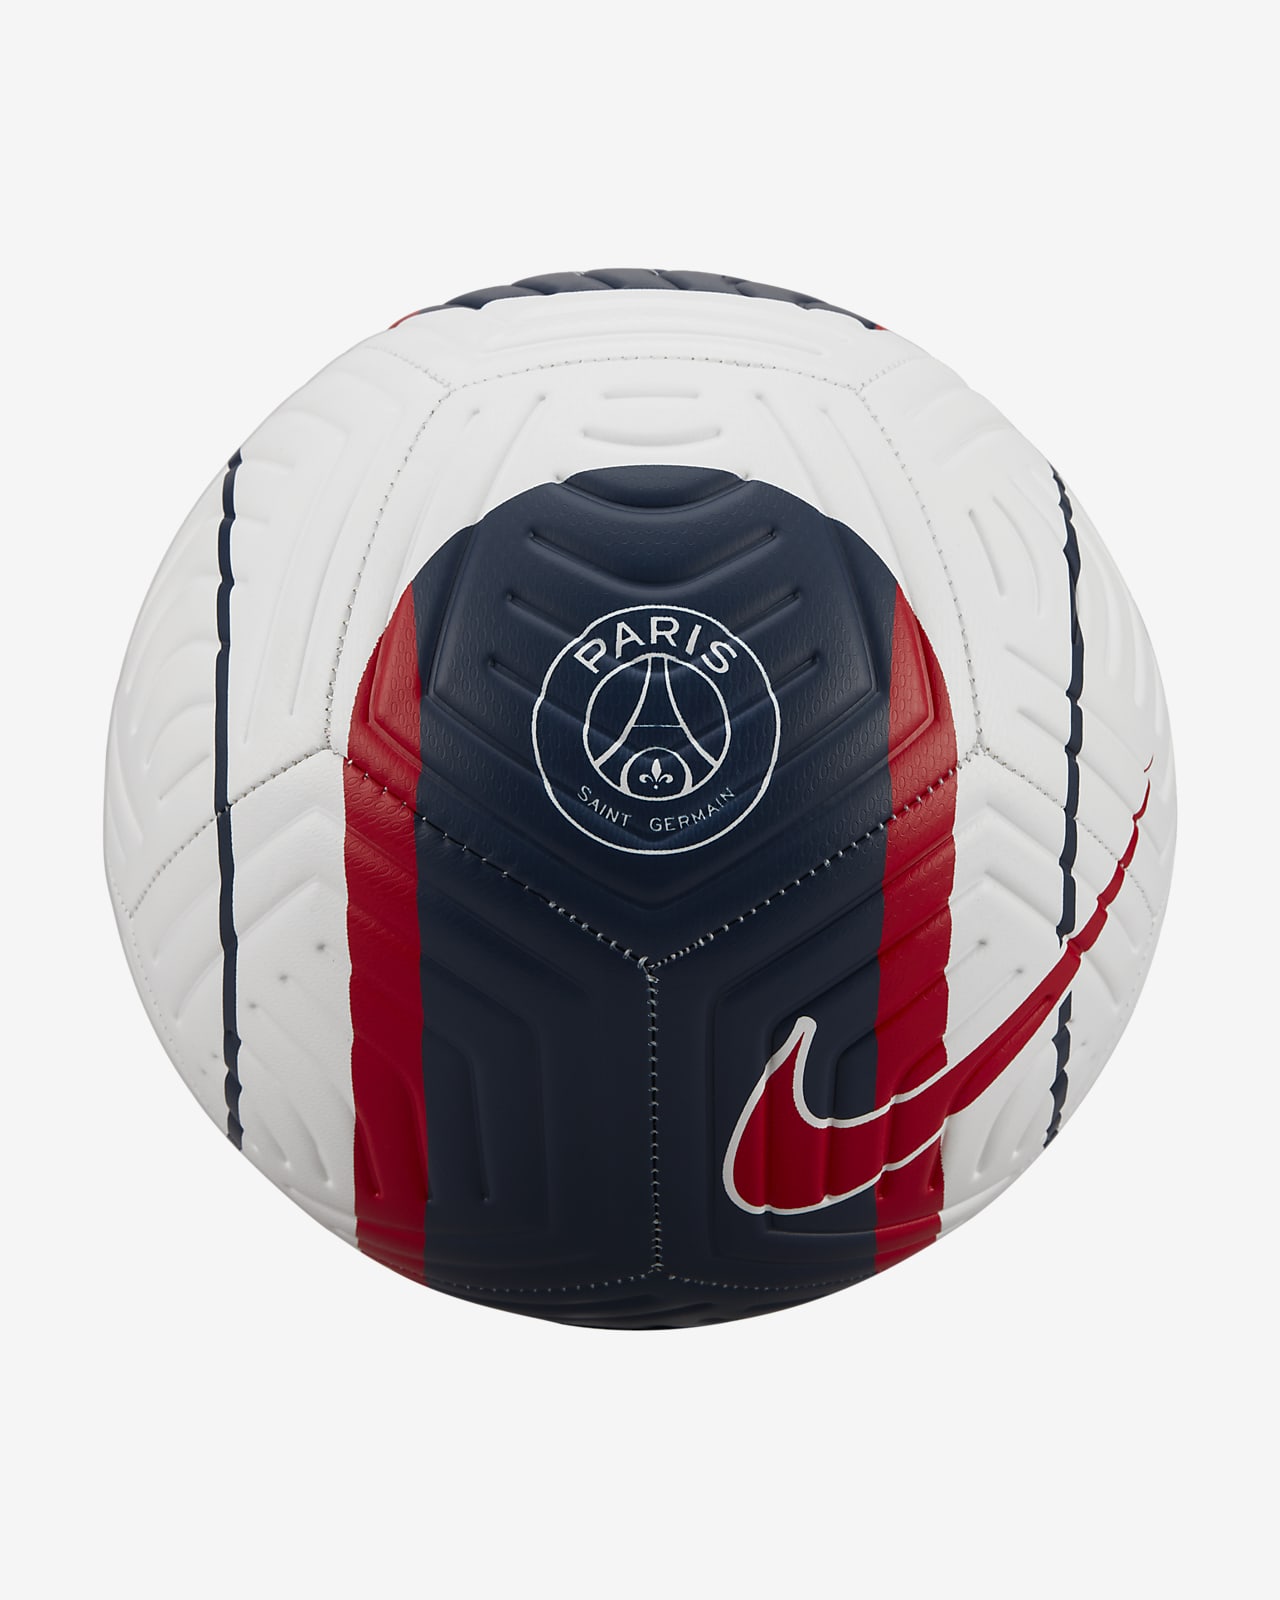 Ausencia Pino conspiración Paris Saint-Germain Strike Soccer Ball. Nike.com